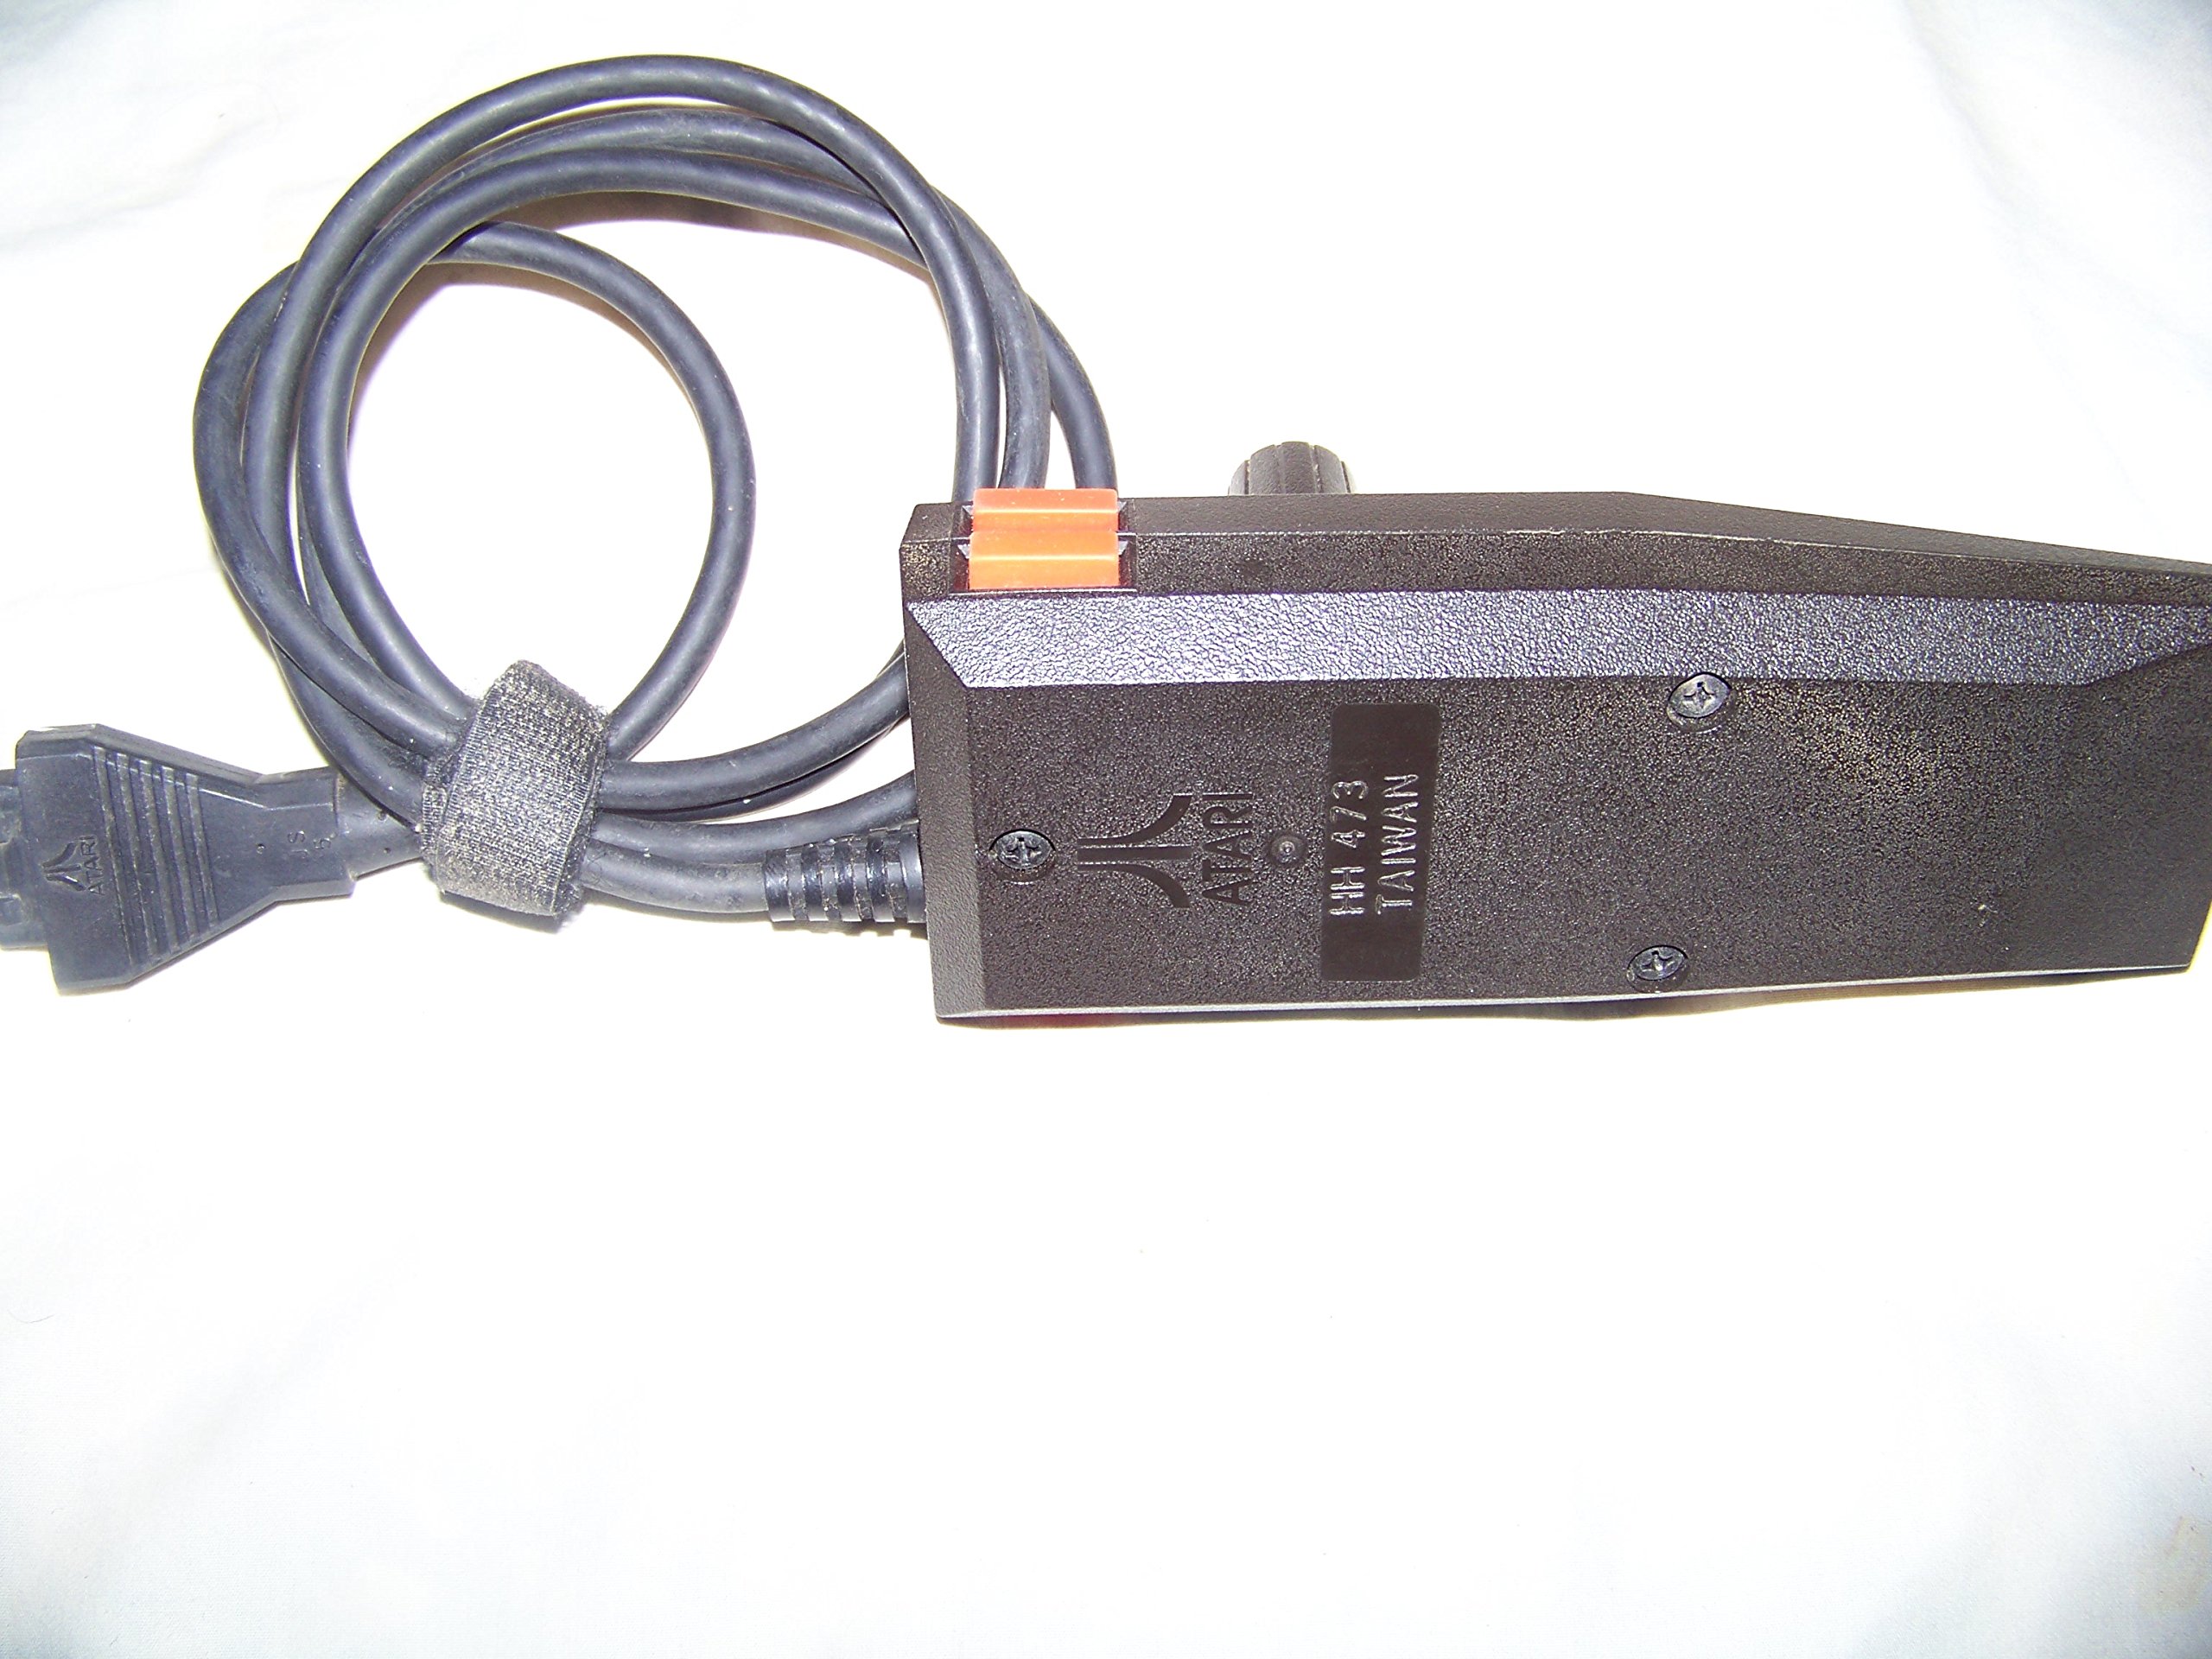 Atari 5200 Joystick Controller (Renewed)